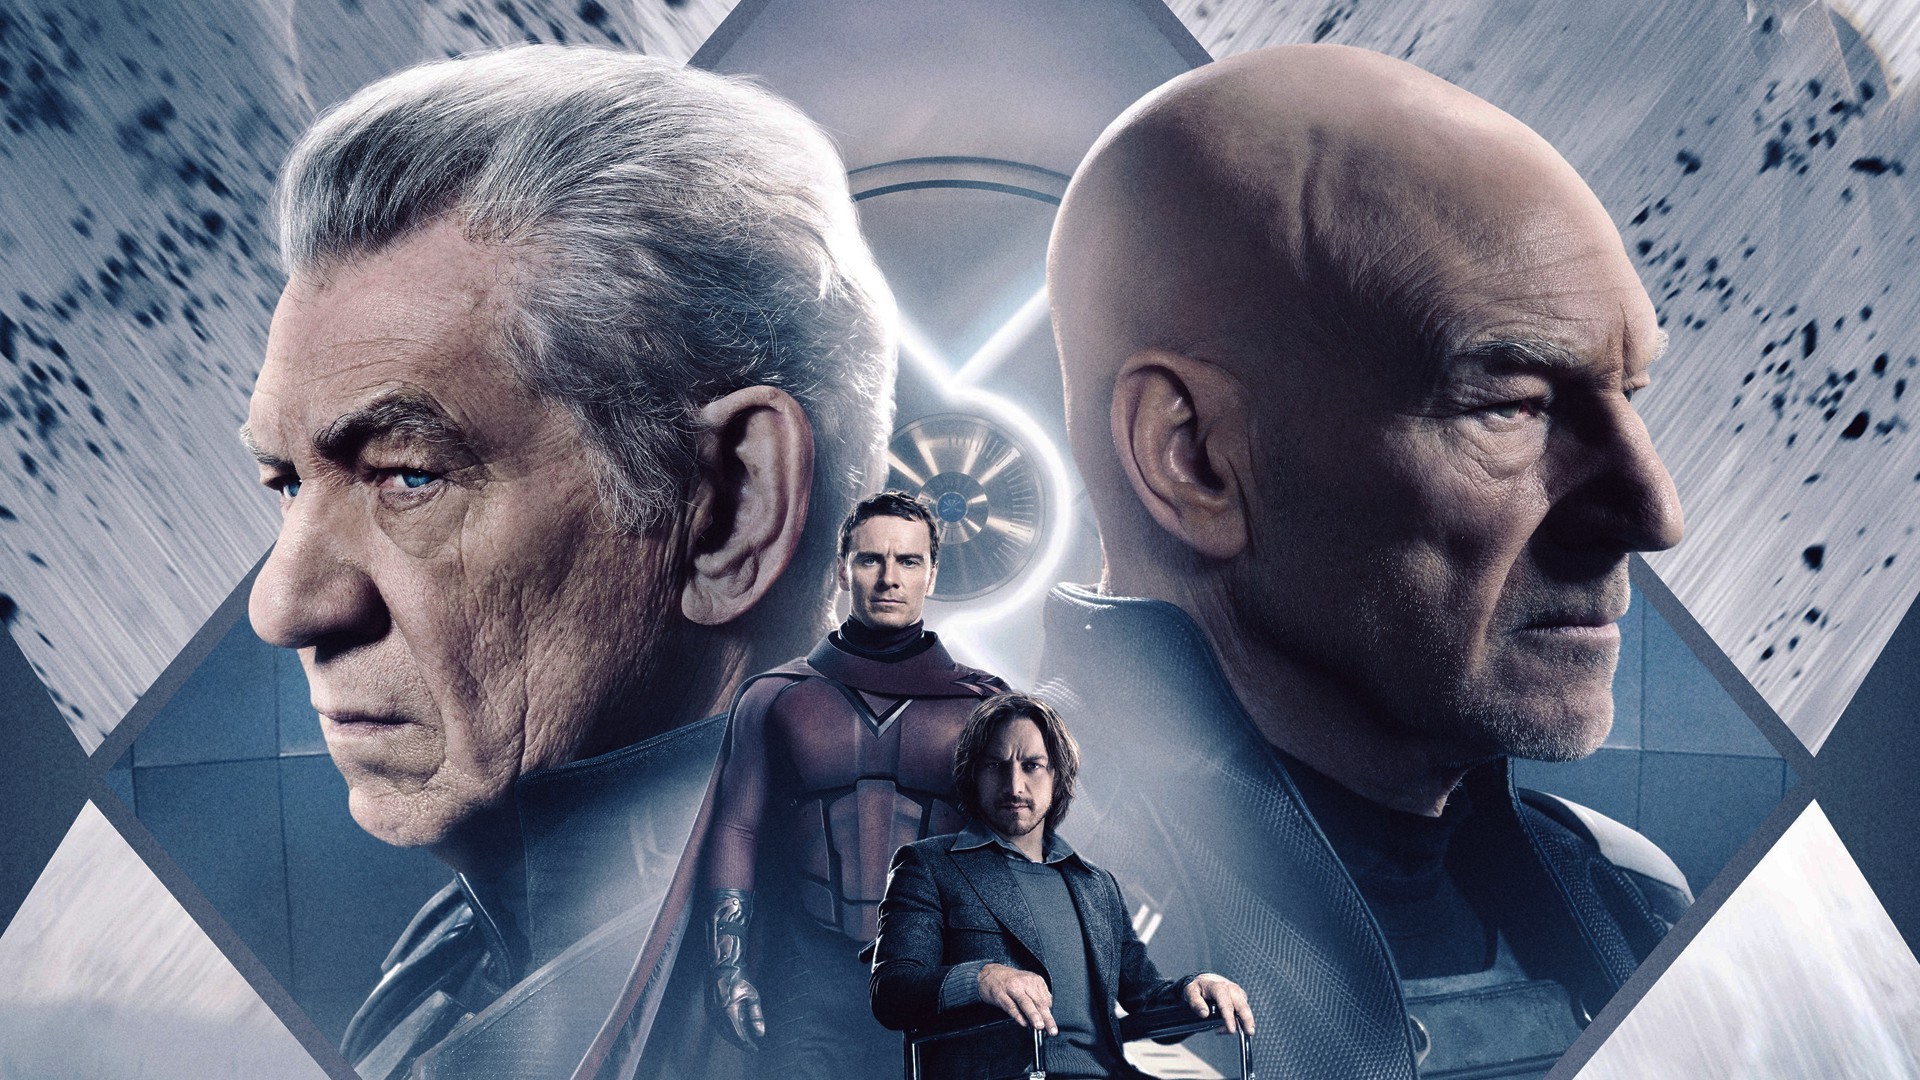 X Men, X Men: Days Of Future Past, Magneto, Charles Xavier, Ian McKellen, Movies, Patrick Stewart, Michael Fassbender, James McAvoy Wallpaper